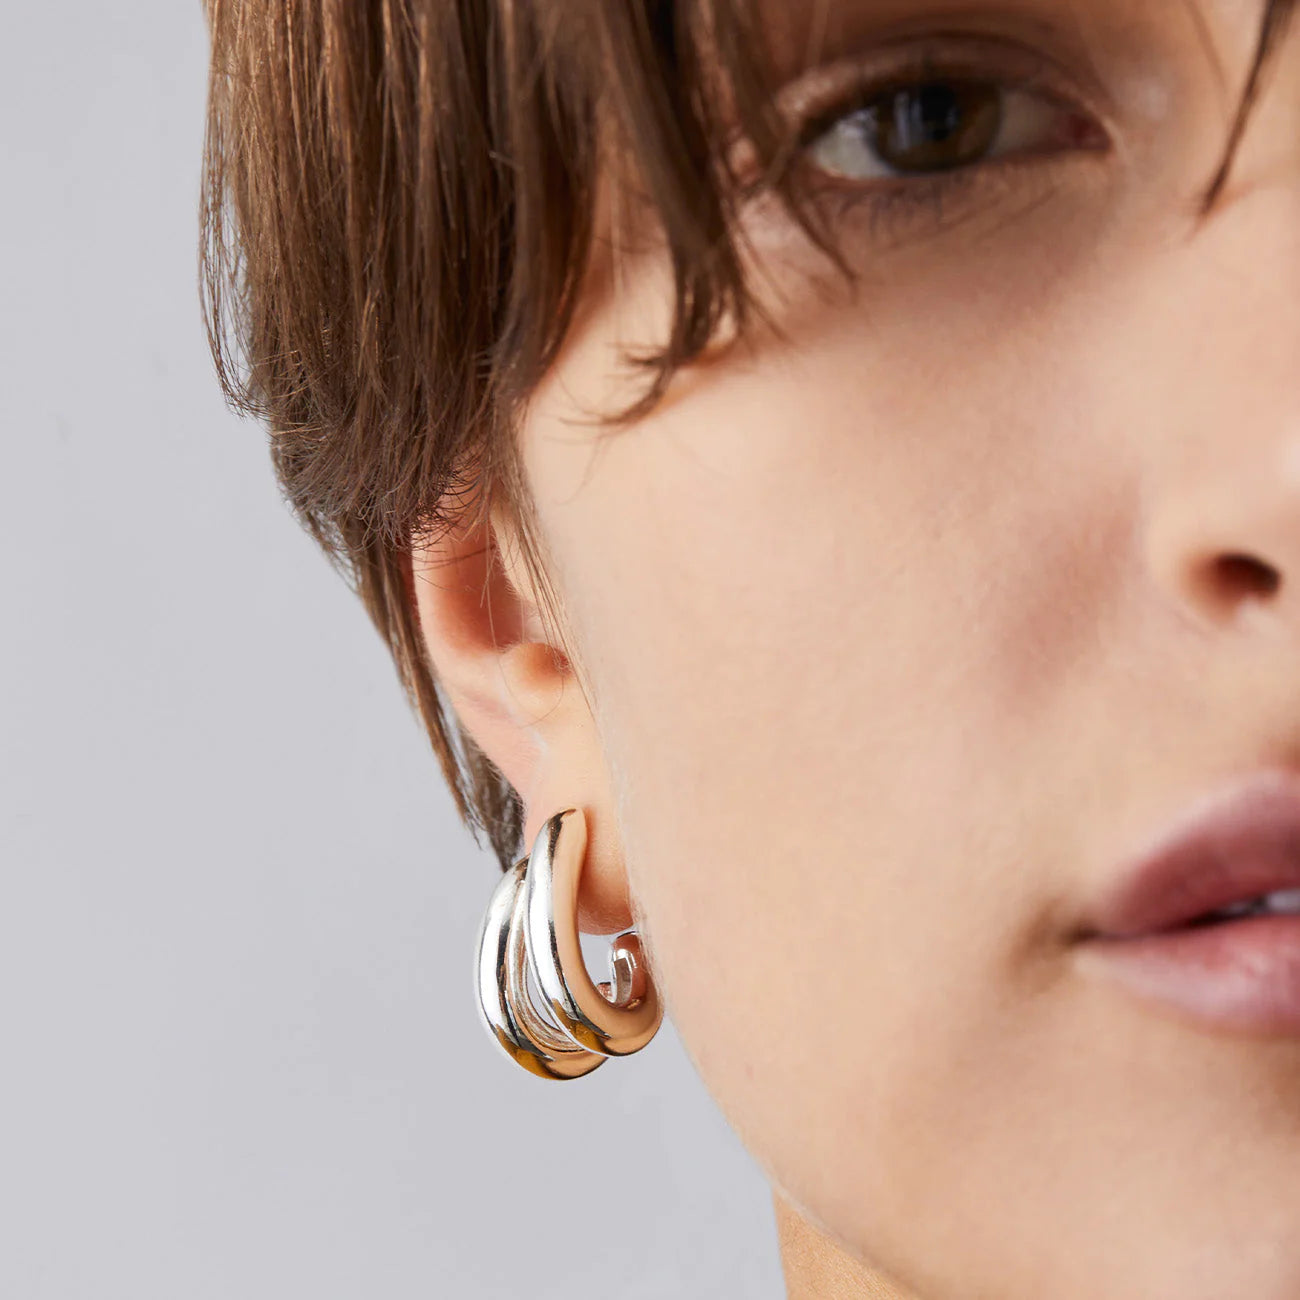 Florence Earrings - Silver by Jenny Bird